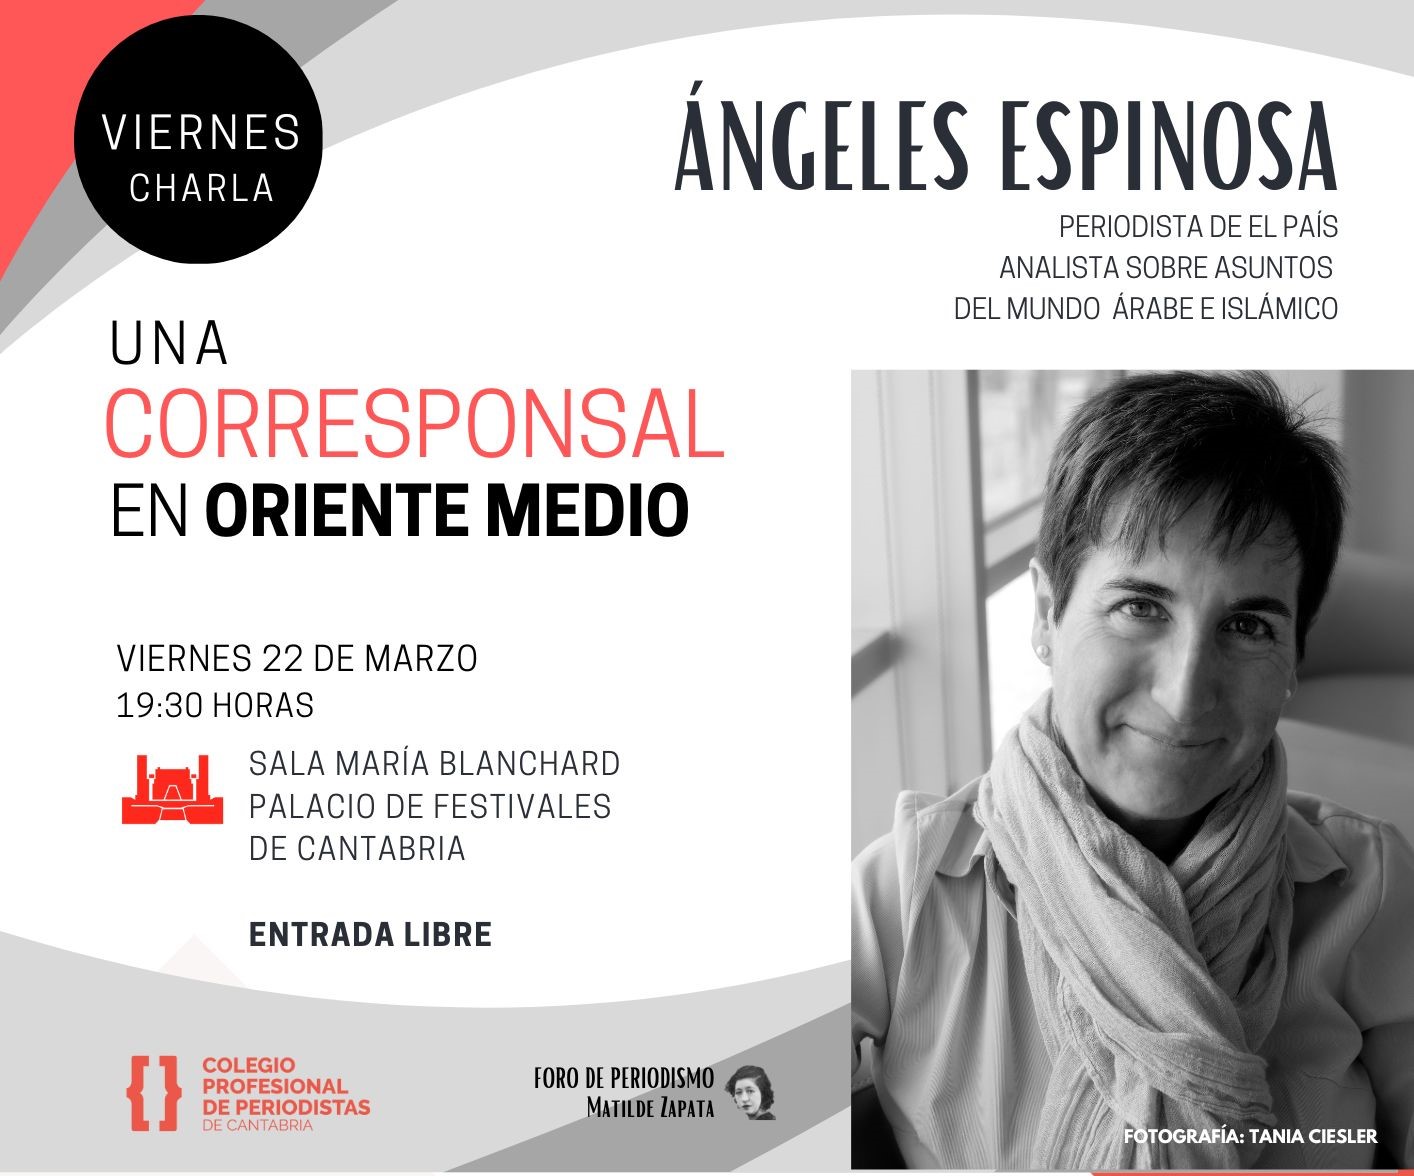 El Colegio de Periodistas de Cantabria inaugura un foro de periodismo abierto a la sociedad